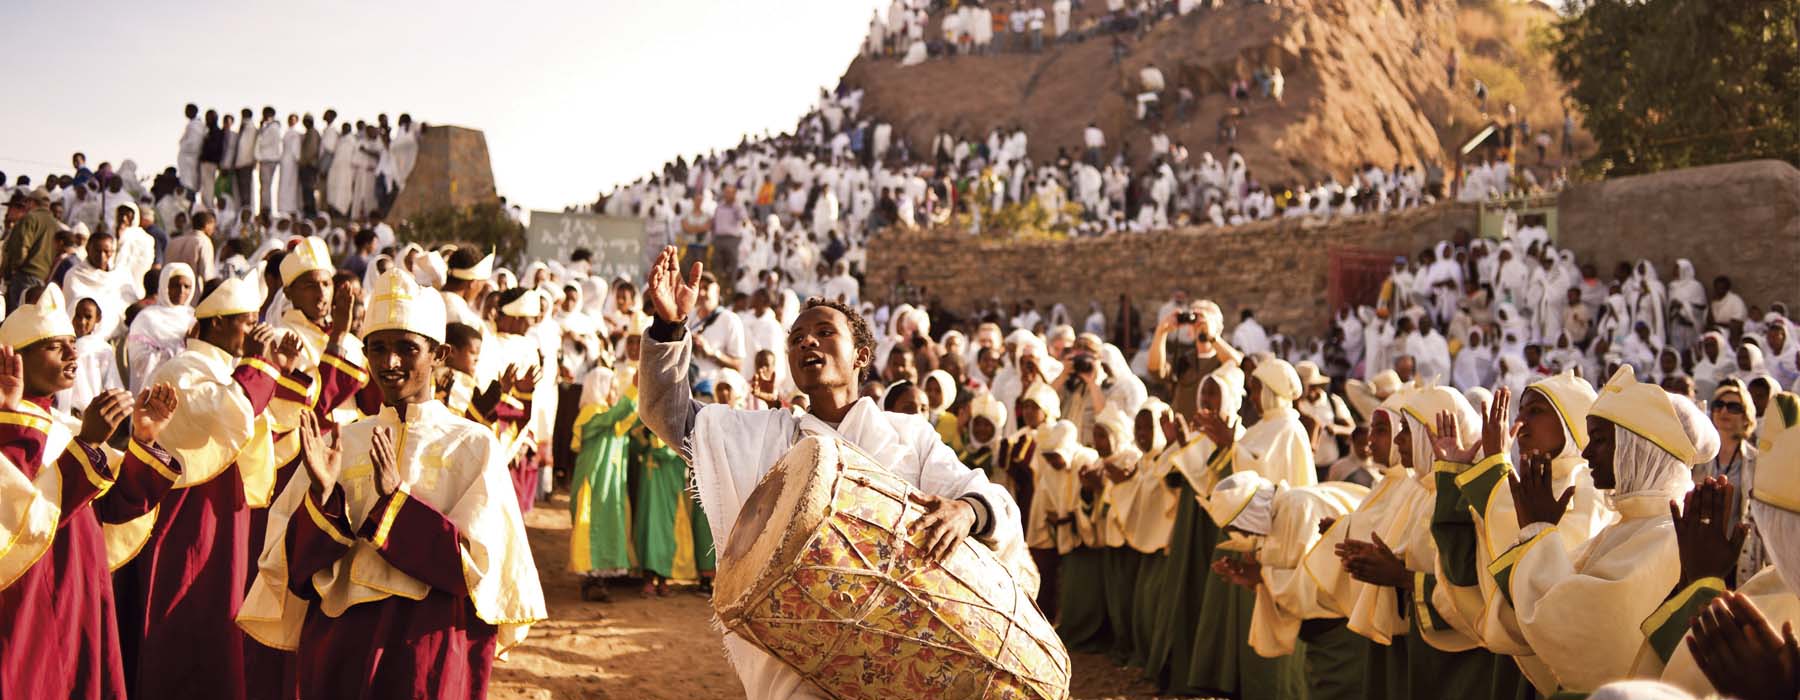 Les itinérants classiques Ethiopie